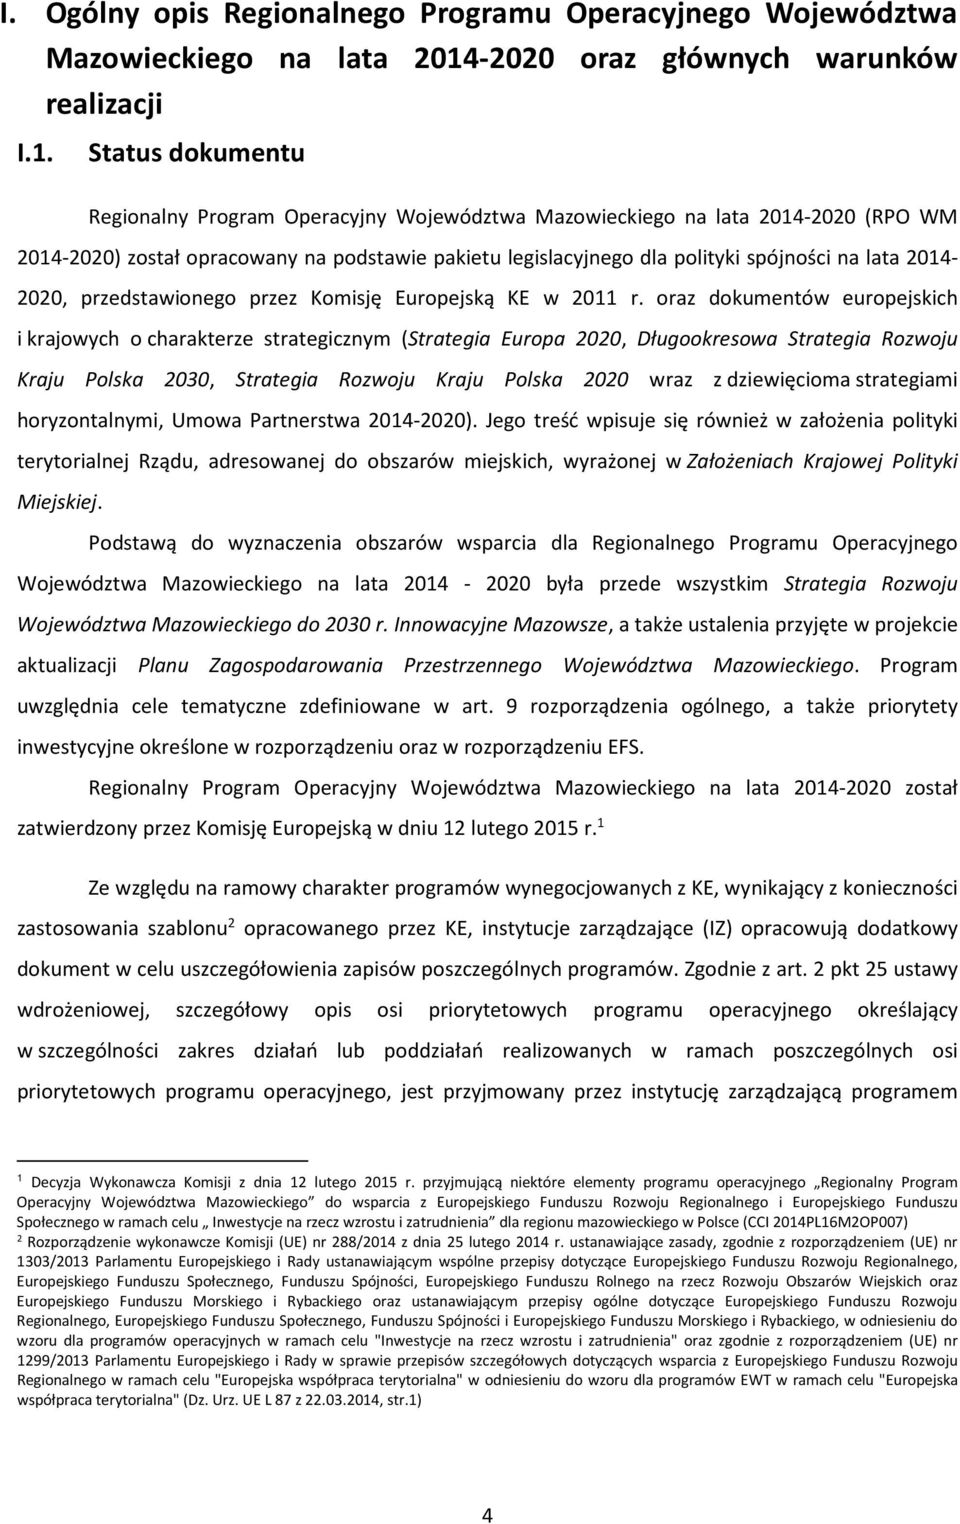 Status dokumentu Regionalny Program Operacyjny Województwa Mazowieckiego na lata 2014-2020 (RPO WM 2014-2020) został opracowany na podstawie pakietu legislacyjnego dla polityki spójności na lata